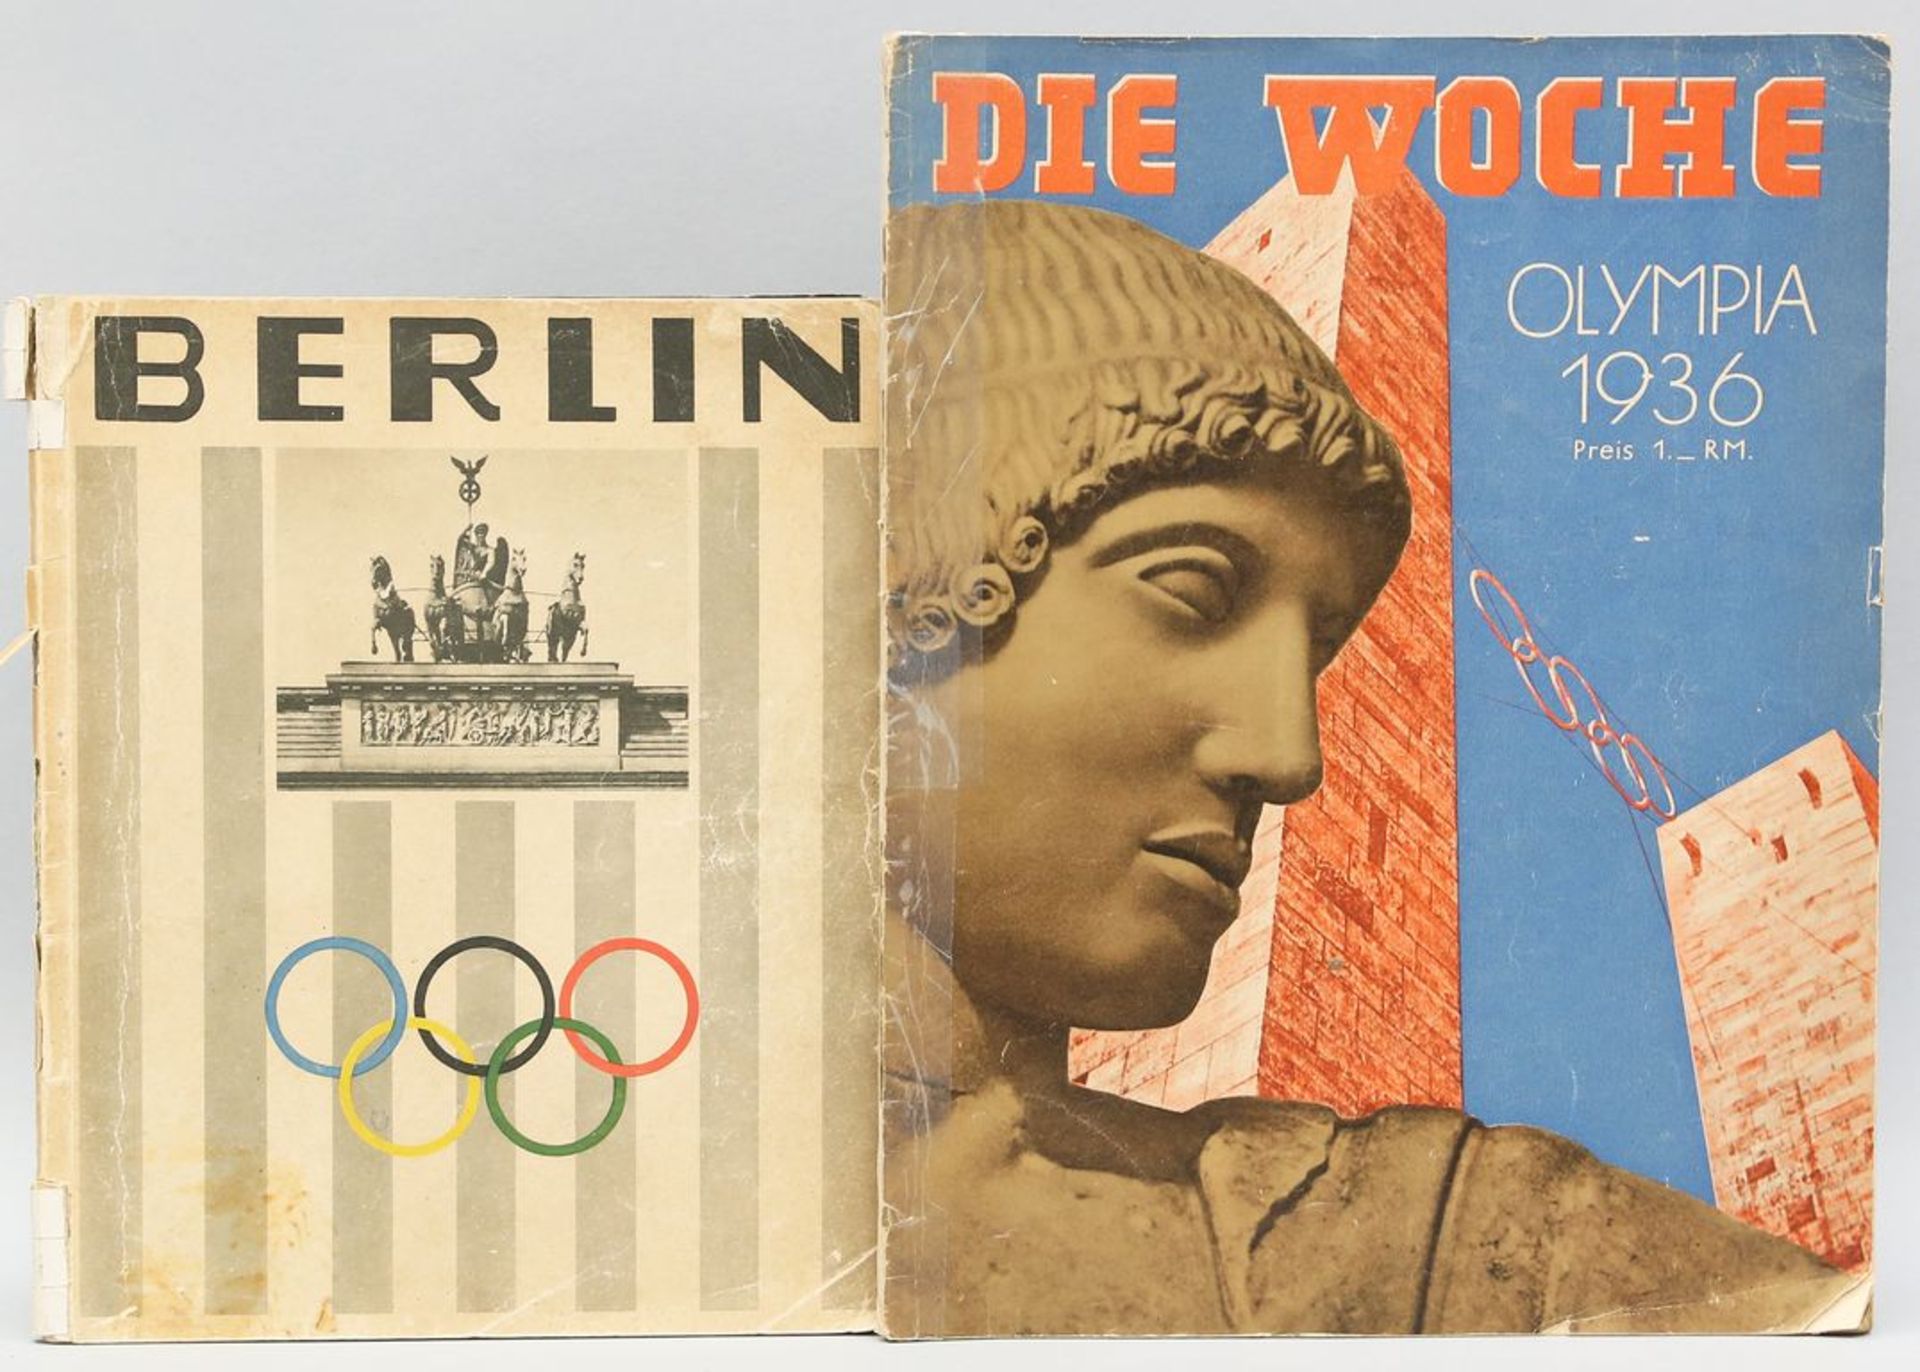 Ausgabe "Die Woche Olympia 1936" und Stadtführer Berlin anlässlich der Olympiade. Gebrauchsspuren.